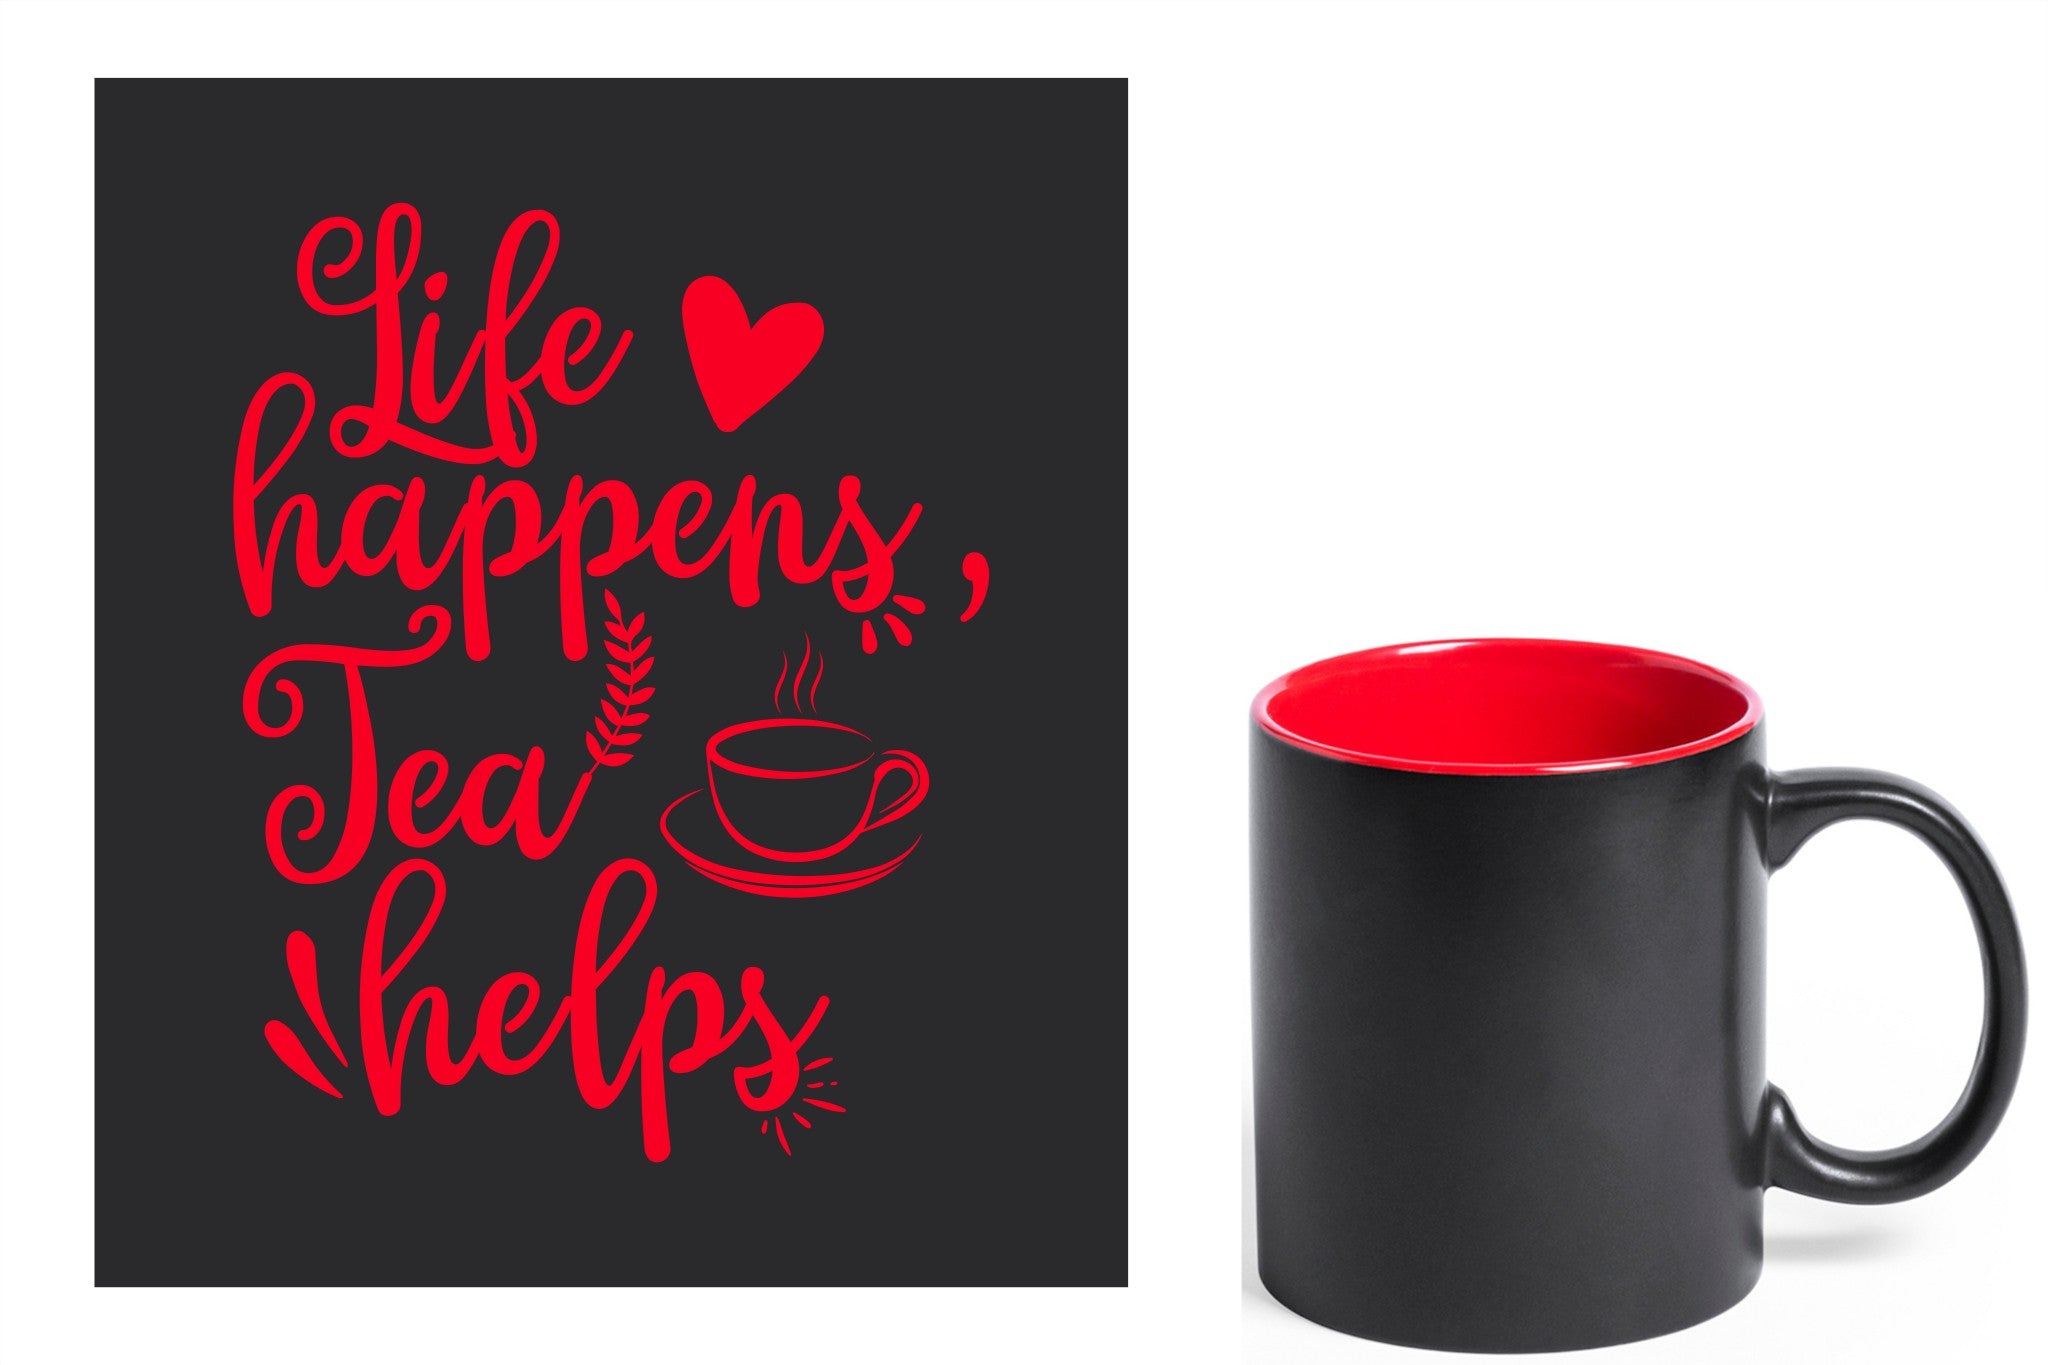 zwarte keramische mok met rode gravure  'Life happens tea helps'.